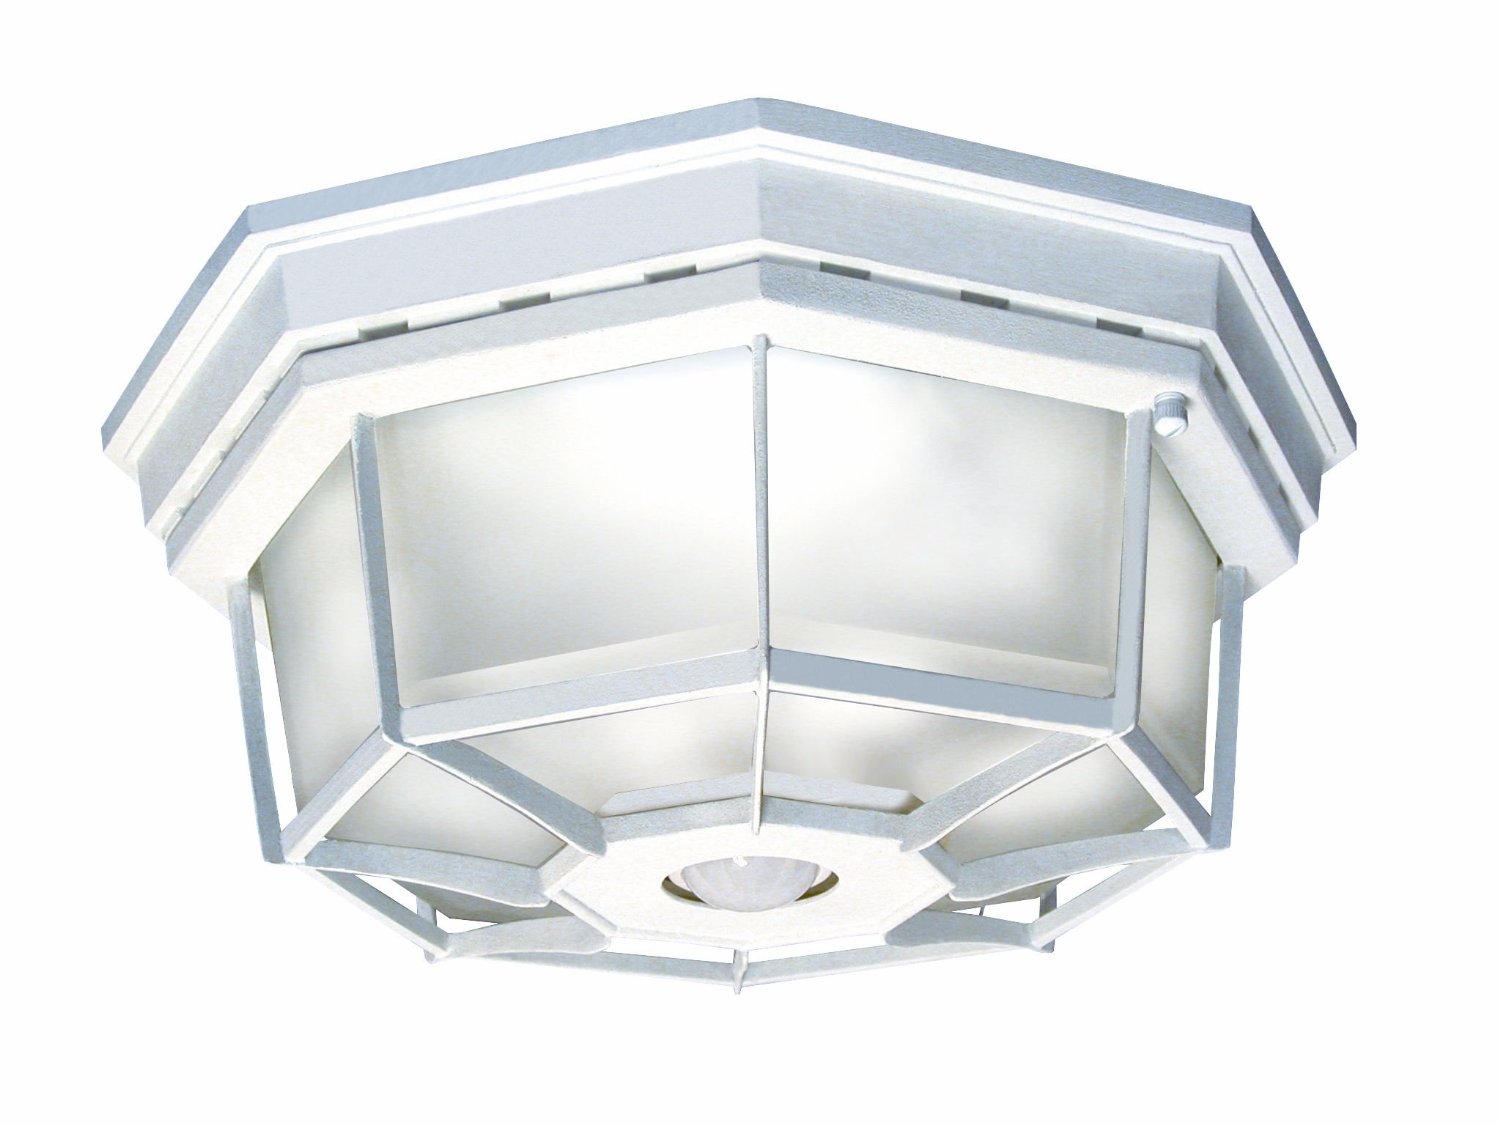 Motion Sensor Indoor Ceiling Light Fixture